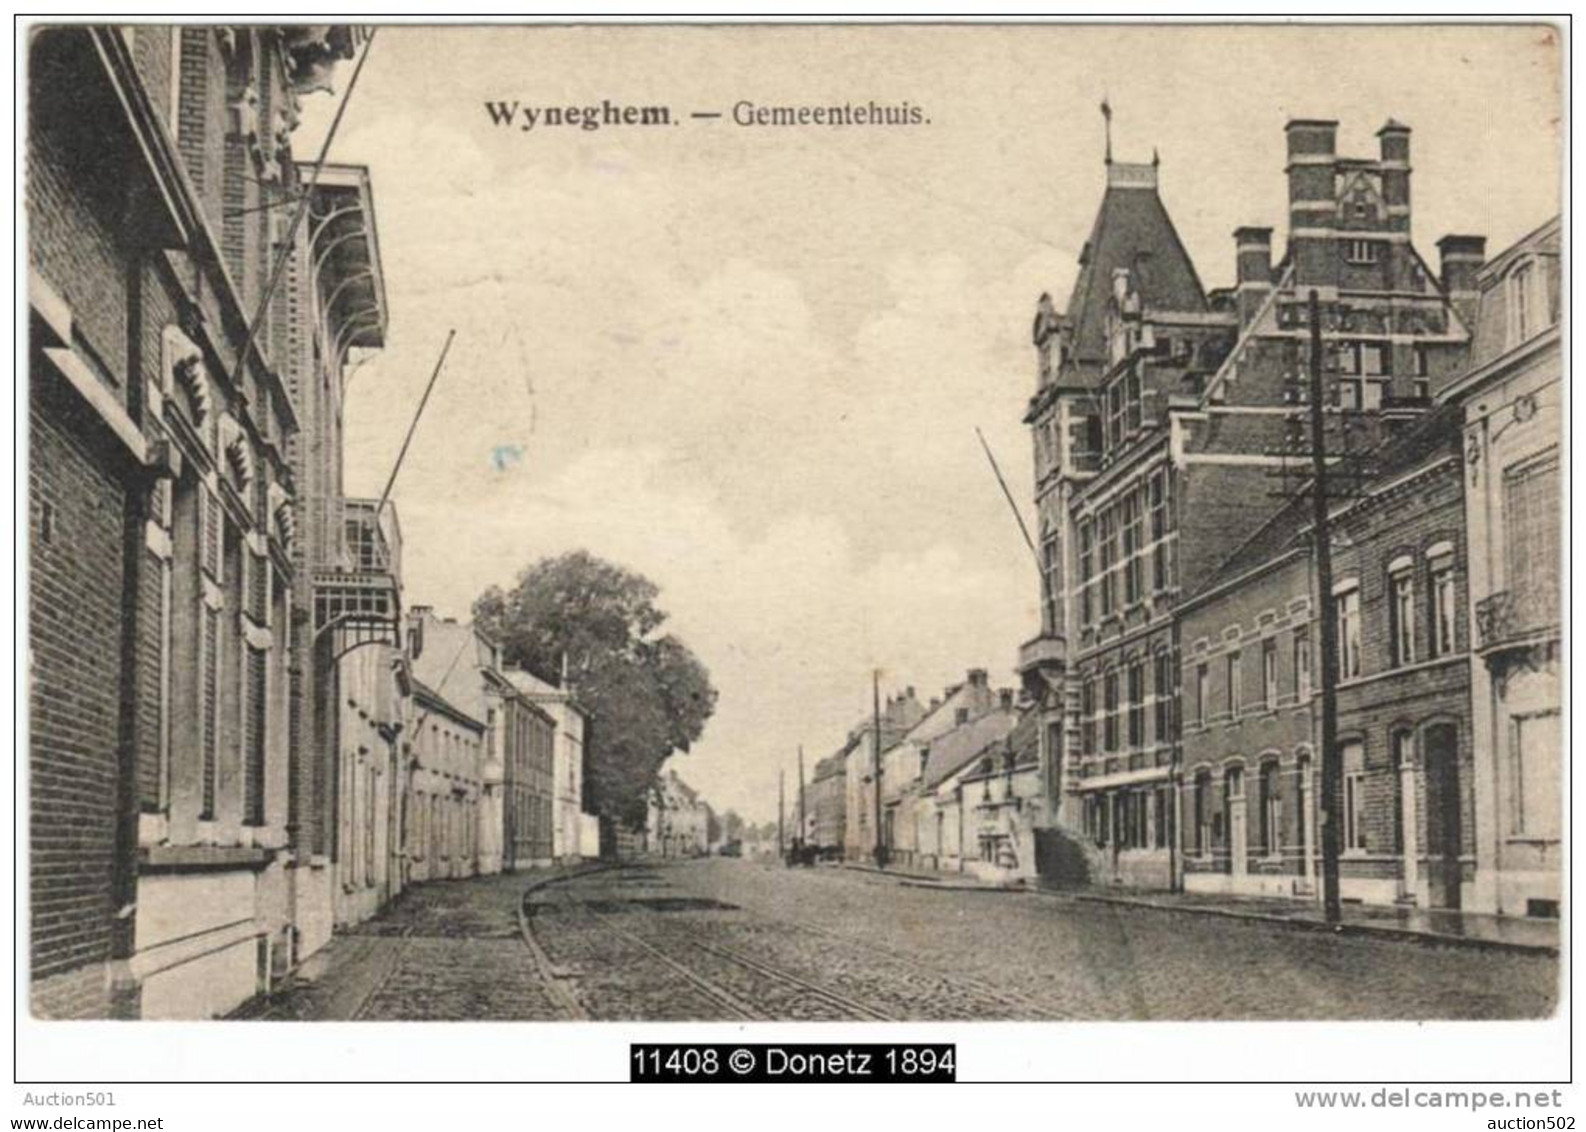 11408g MAISON COMMUNALE - Gemeentehuis - Wyneghem - 1923 - Wijnegem